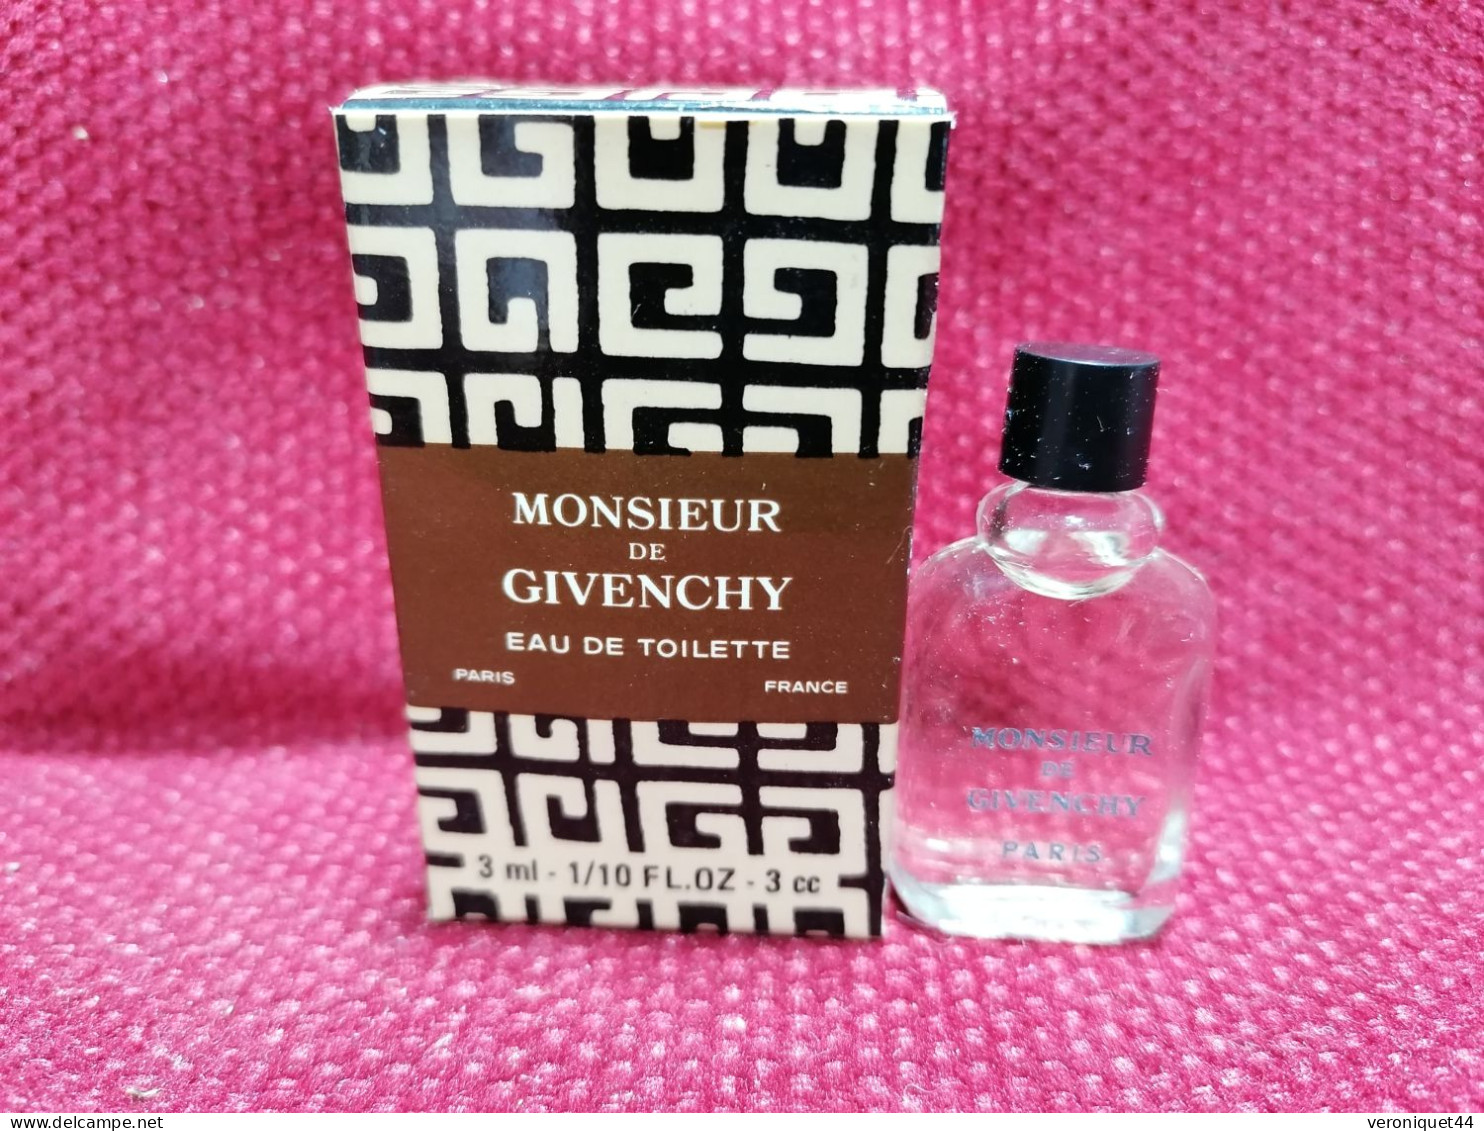 Monsieur De Givenchy EDT Miniature 3 ML - Miniatures Men's Fragrances (in Box)